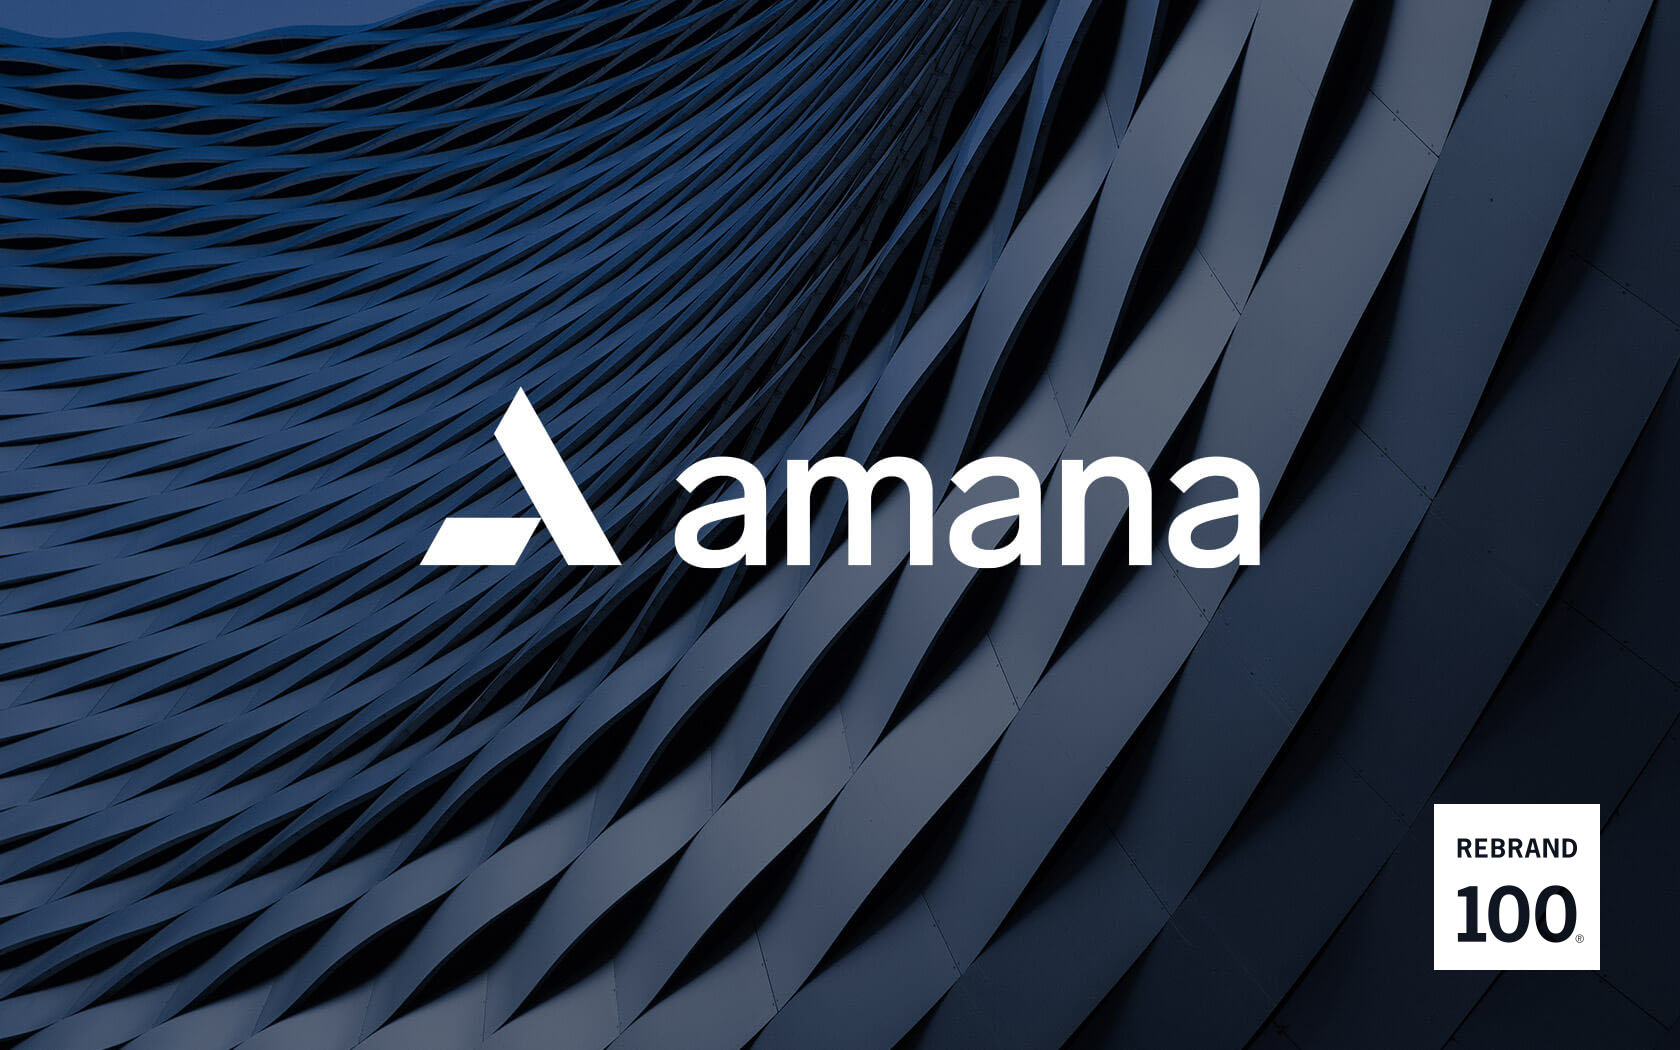 Amana logo in white